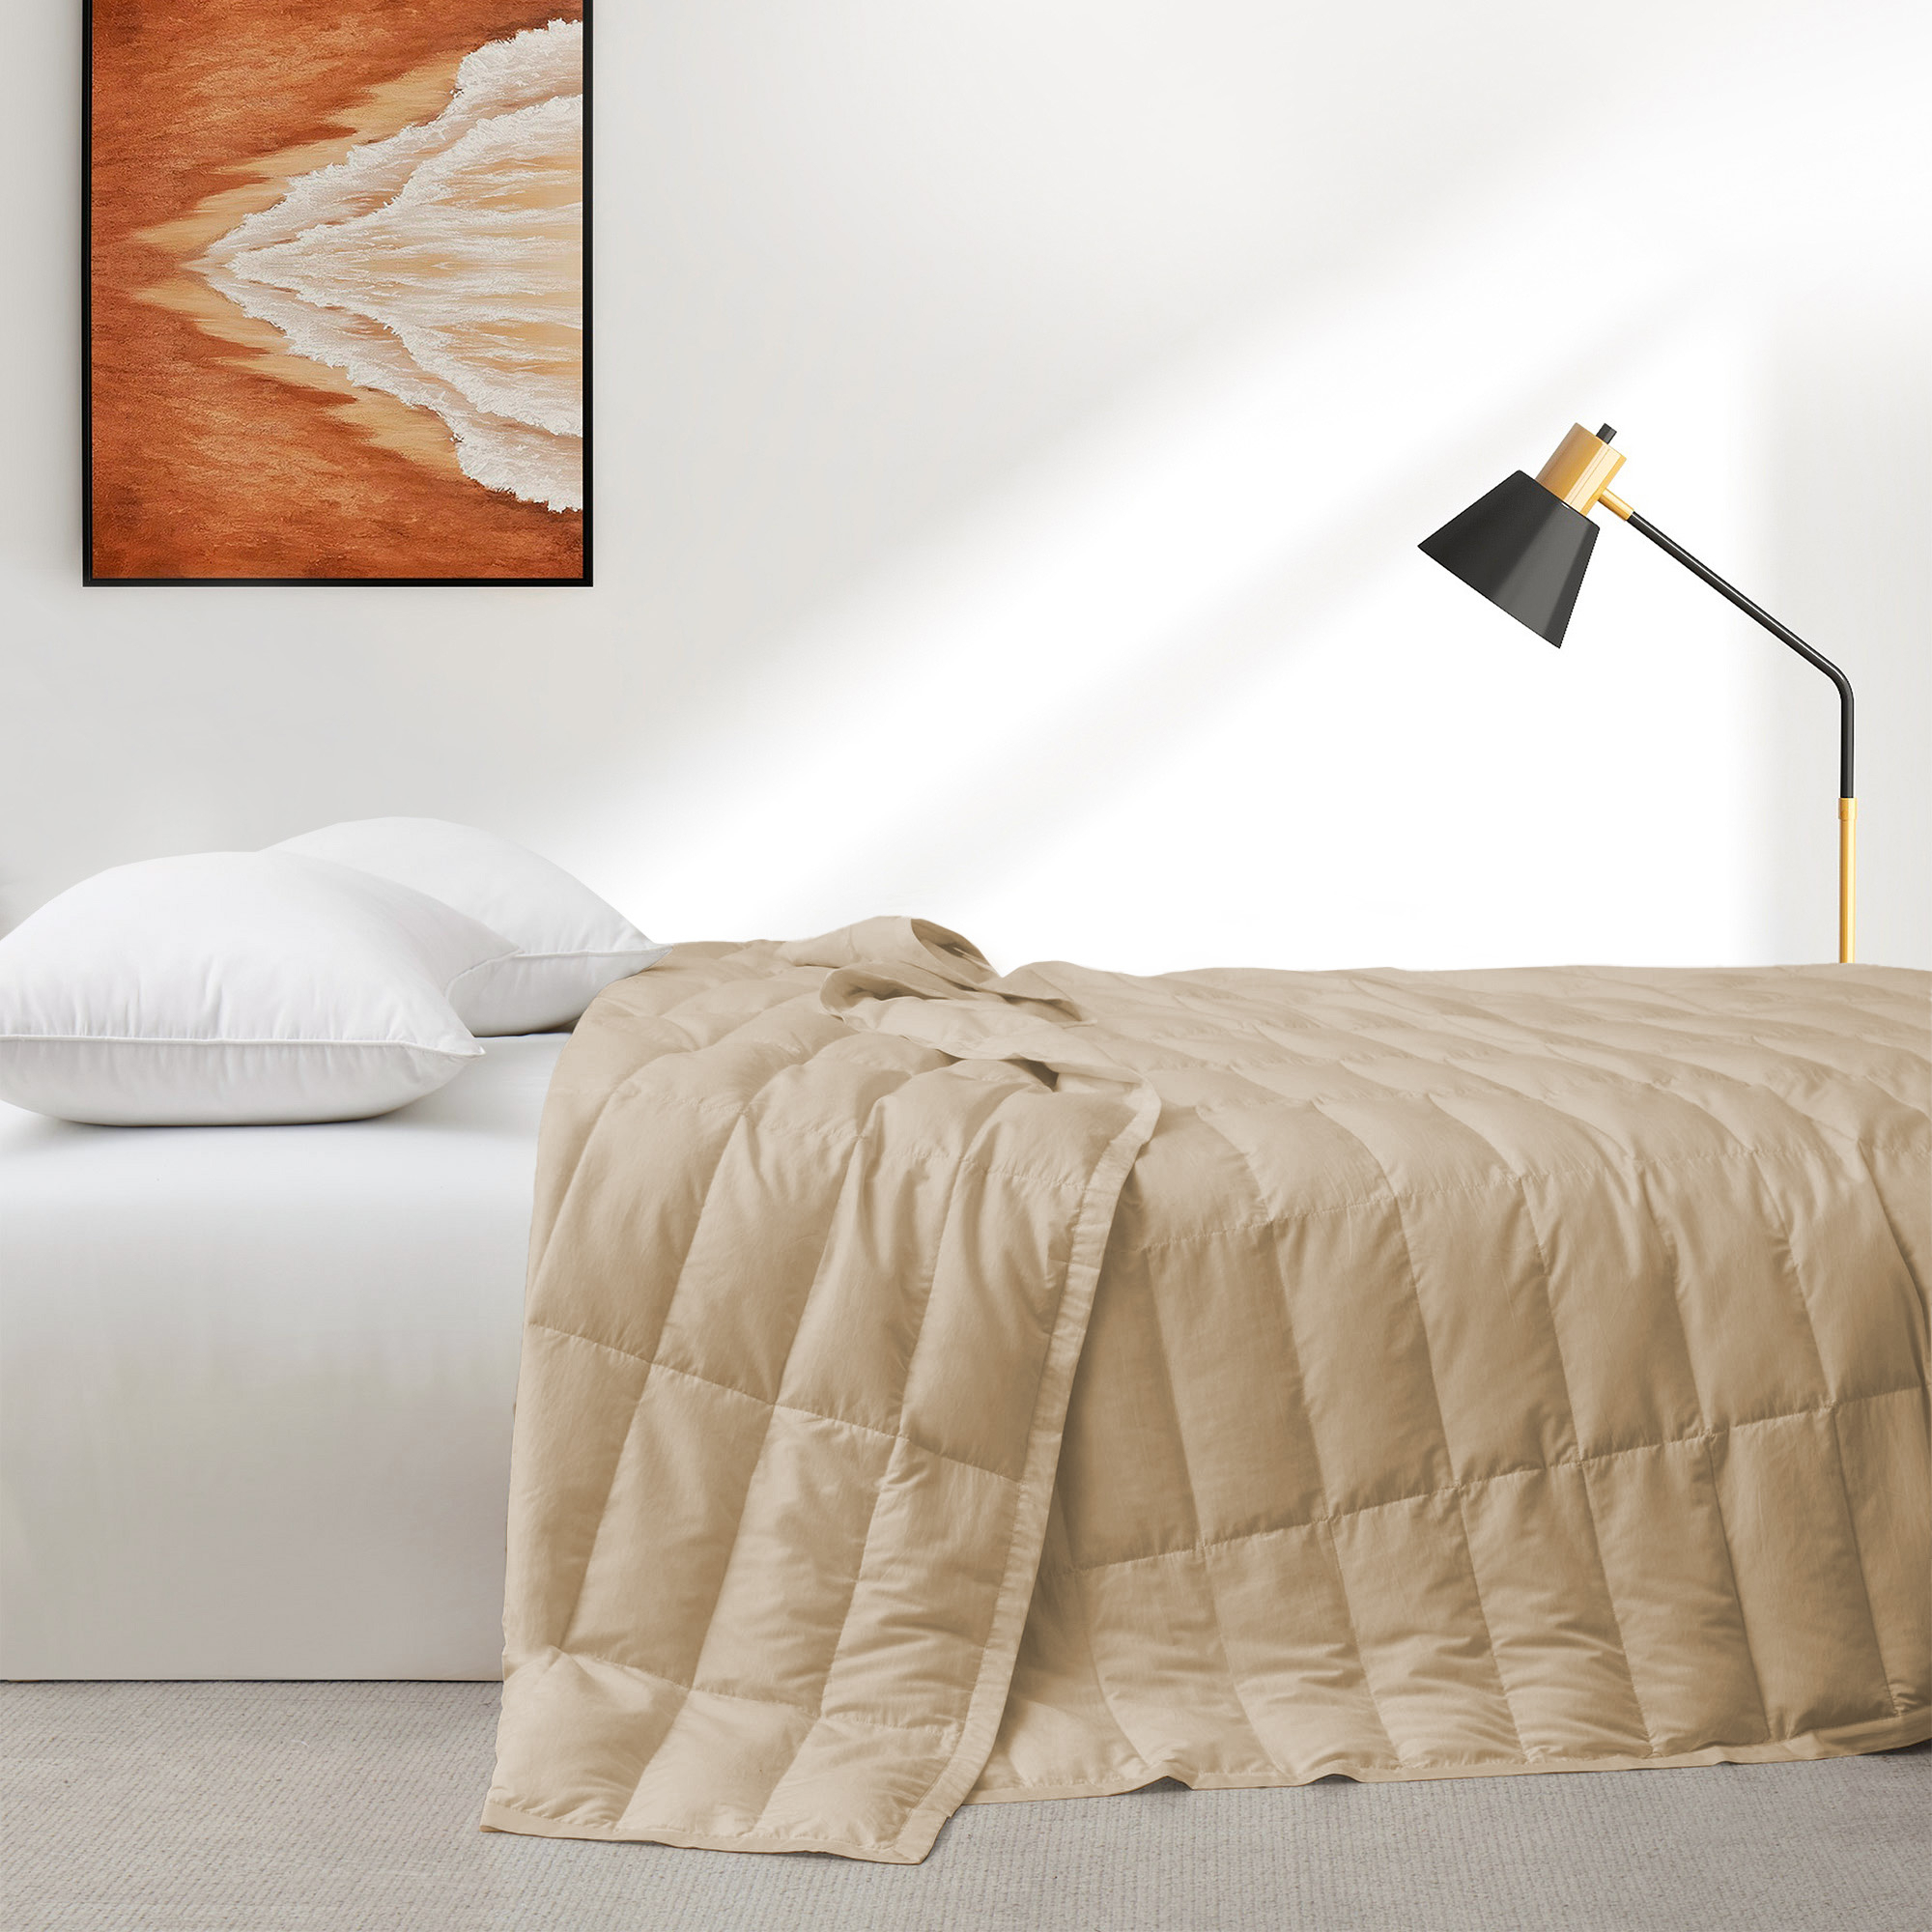 TENCELâ¢ Lyocell Lightweight Cooling Down Blanket-Luxurious Comfort Summer Blanket - Ginger Root, King